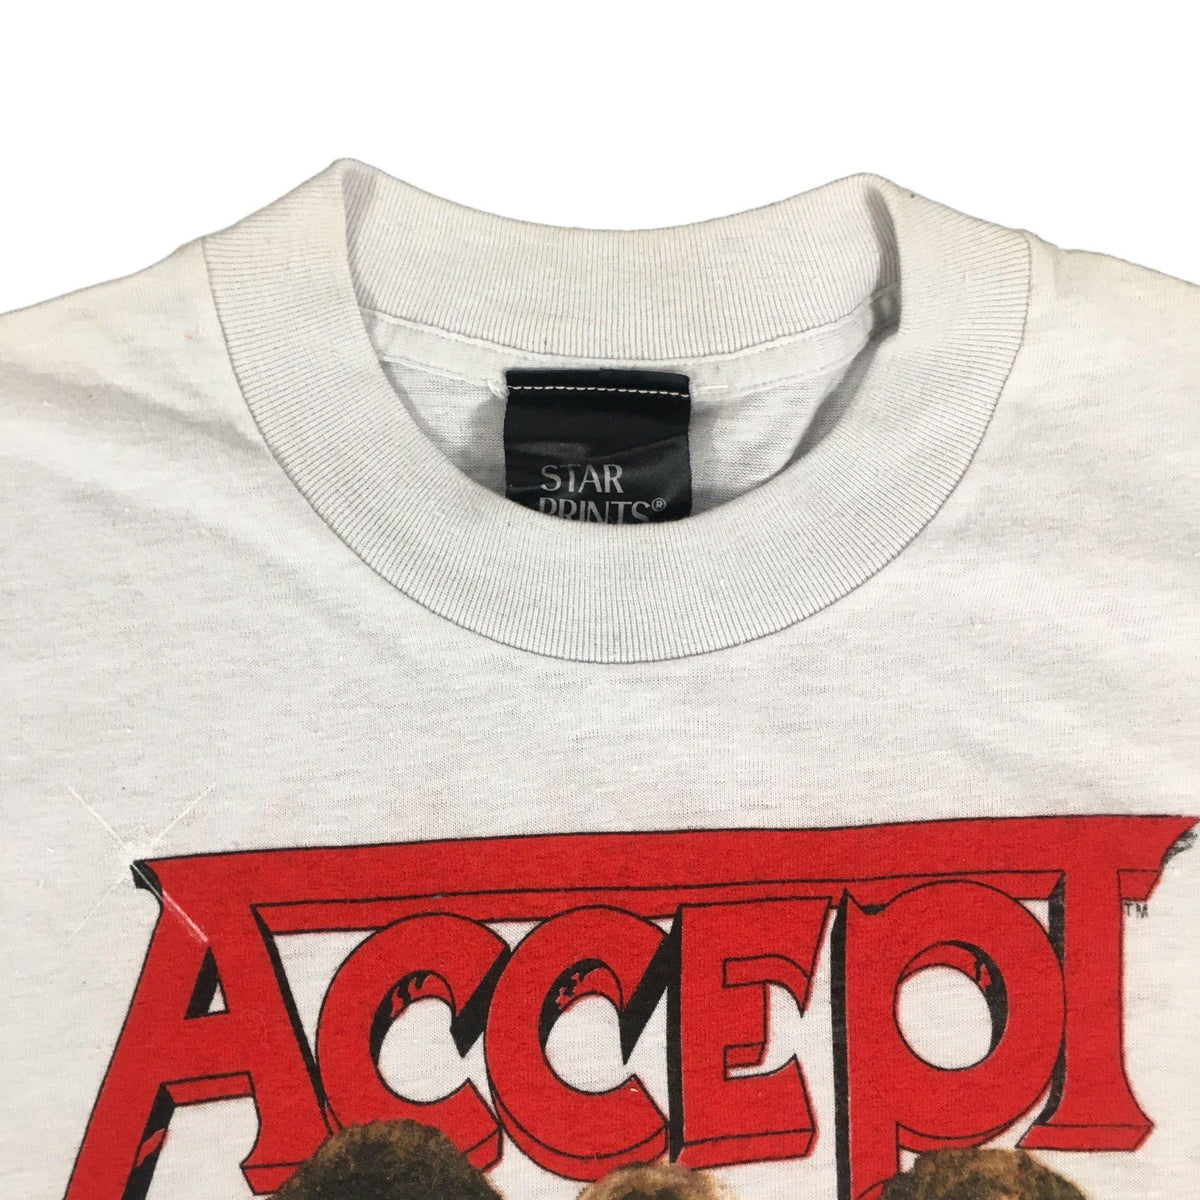 Vintage Accept &quot;Russian Roulette&quot; T-Shirt - jointcustodydc